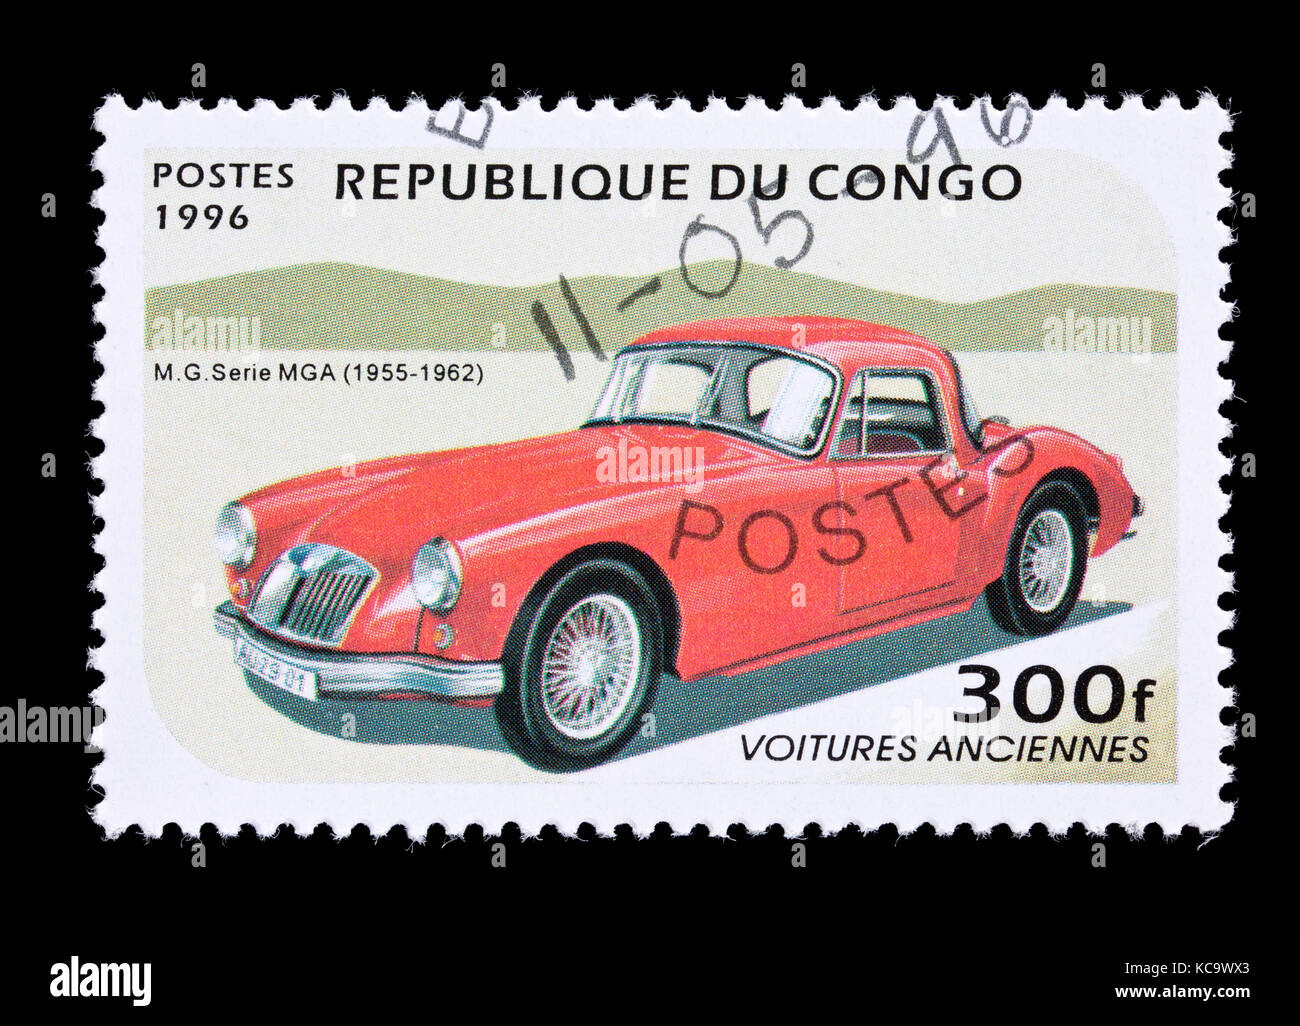 Francobollo dalla Repubblica popolare del Congo raffiguranti am MG MGA serie classic automobile. Foto Stock